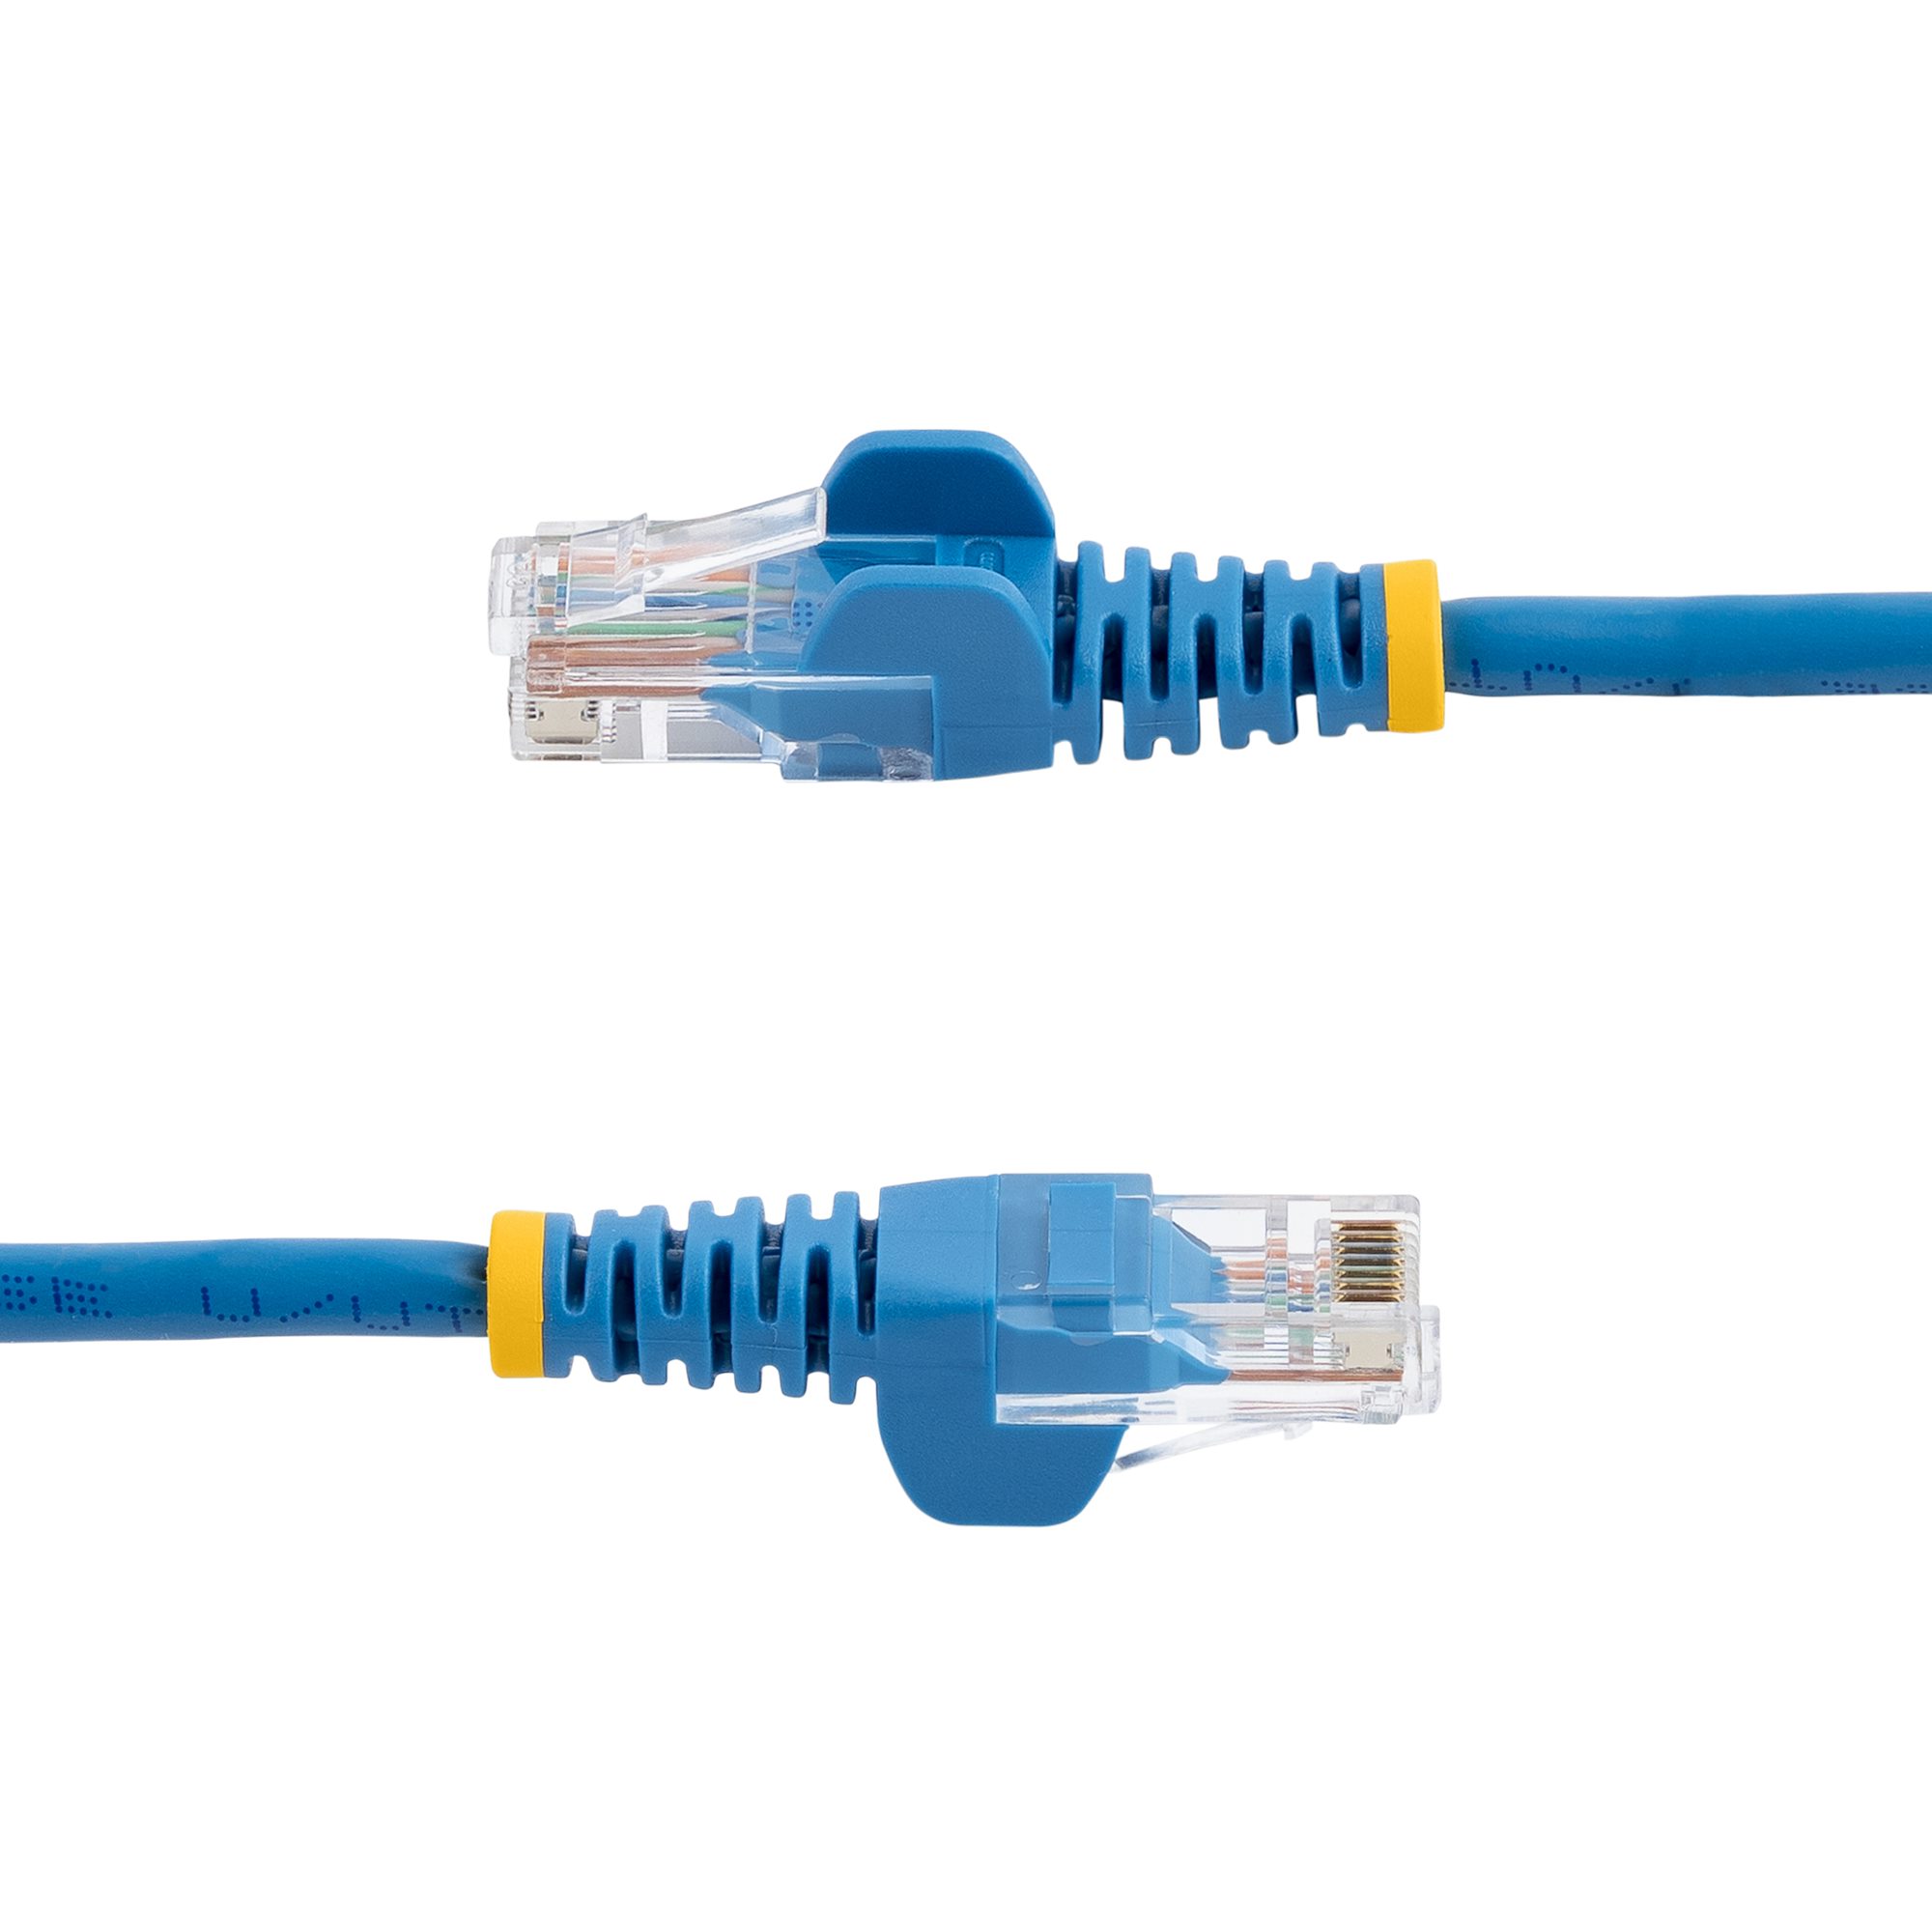 Cable Ethernet CAT 5e Spectra 15.24 metros Azul